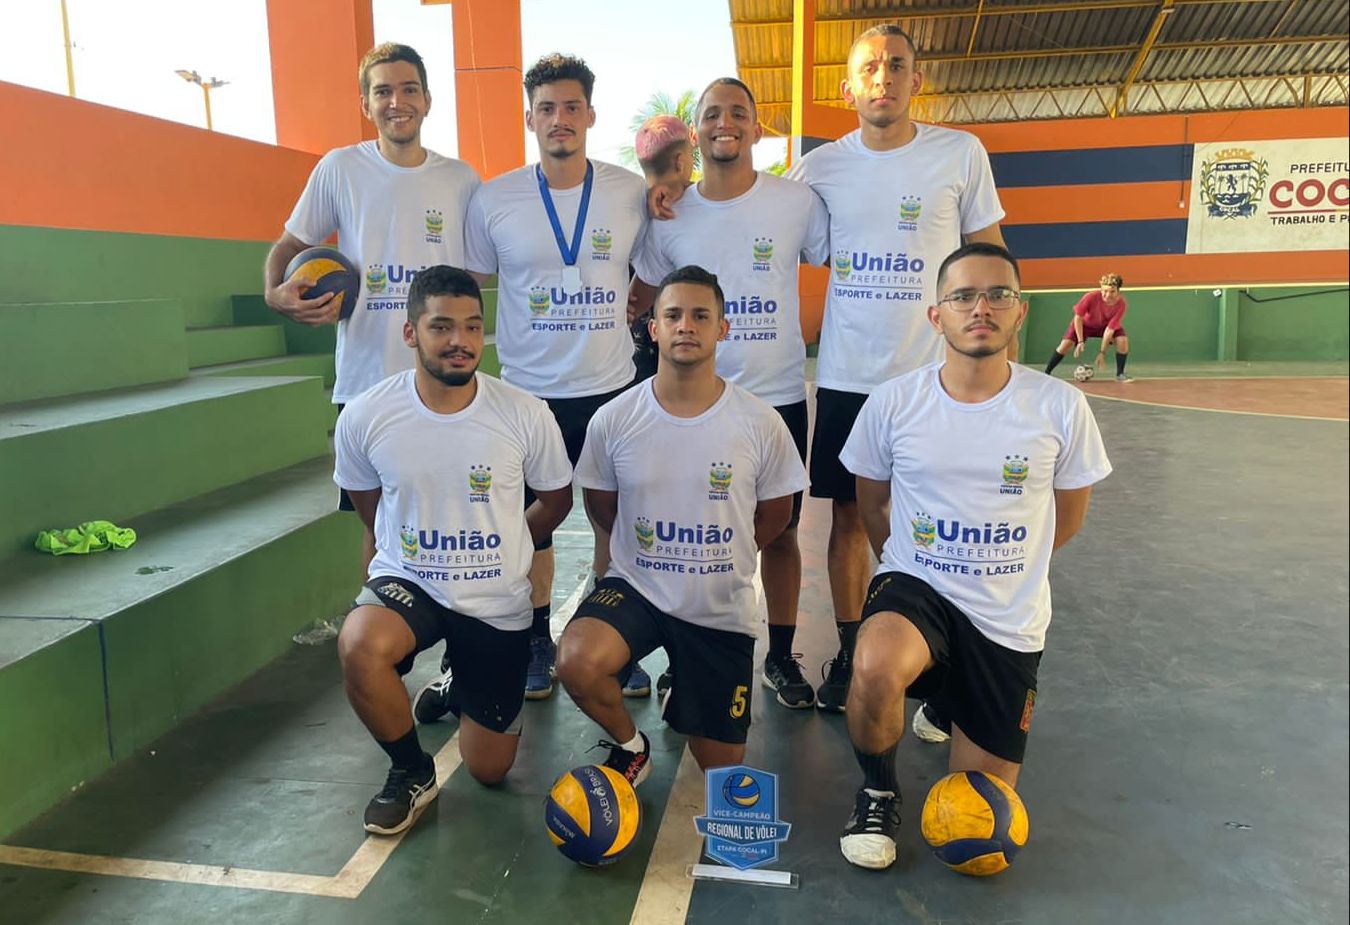 Seleção de vôlei de União conquista vice-campeonato em torneio regional no Piauí